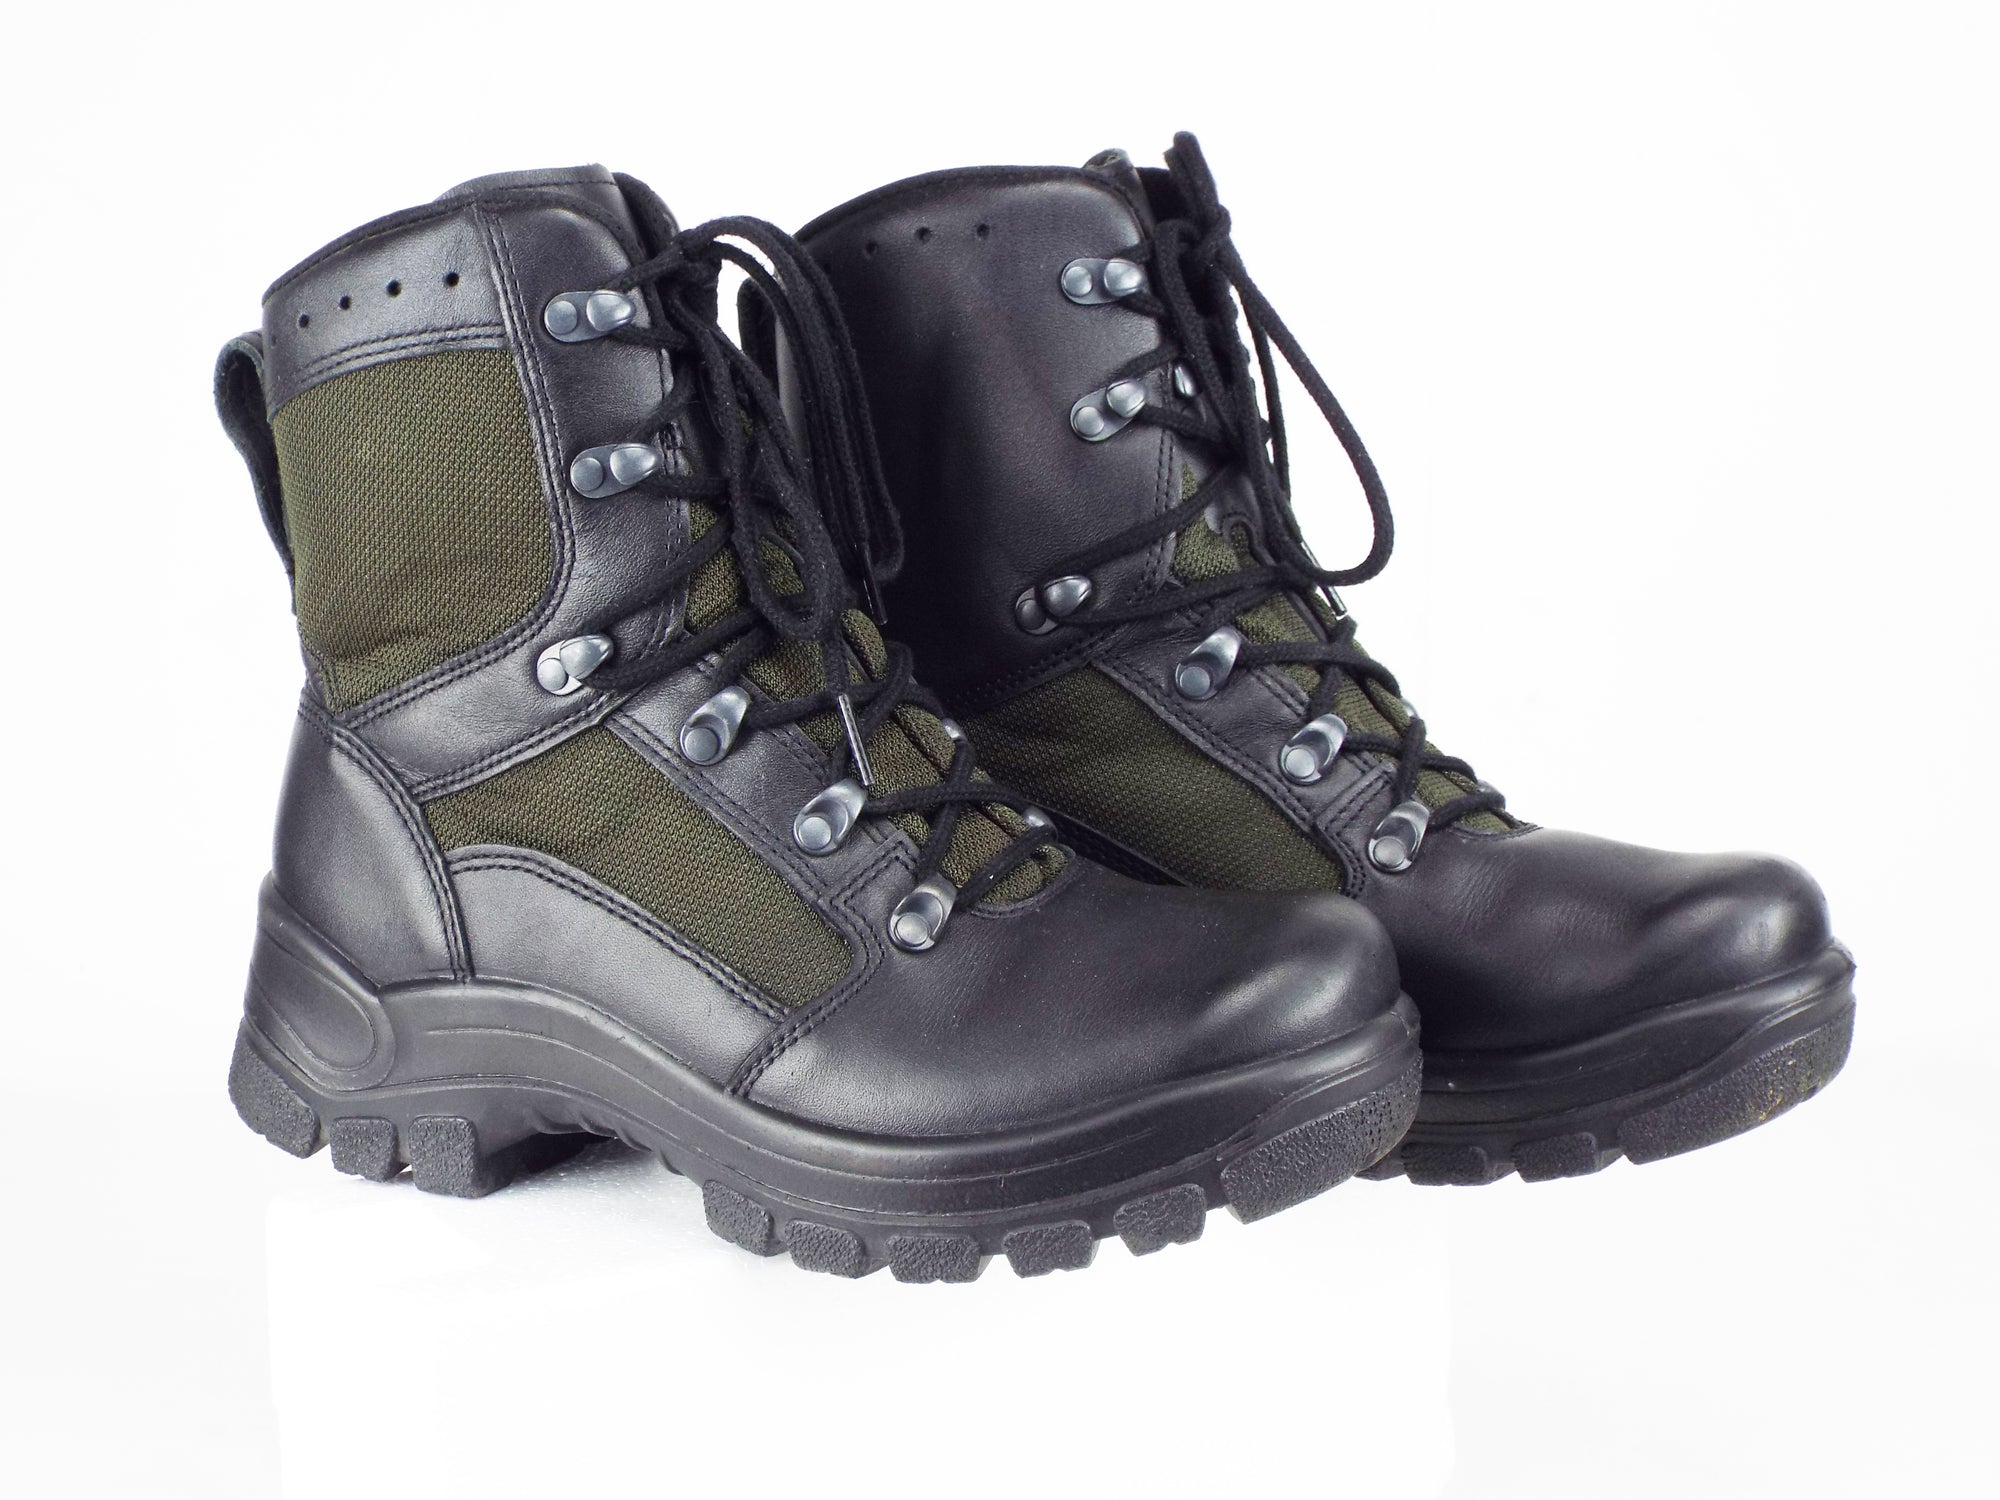 German Jungle Boots - New Model - Grade 1